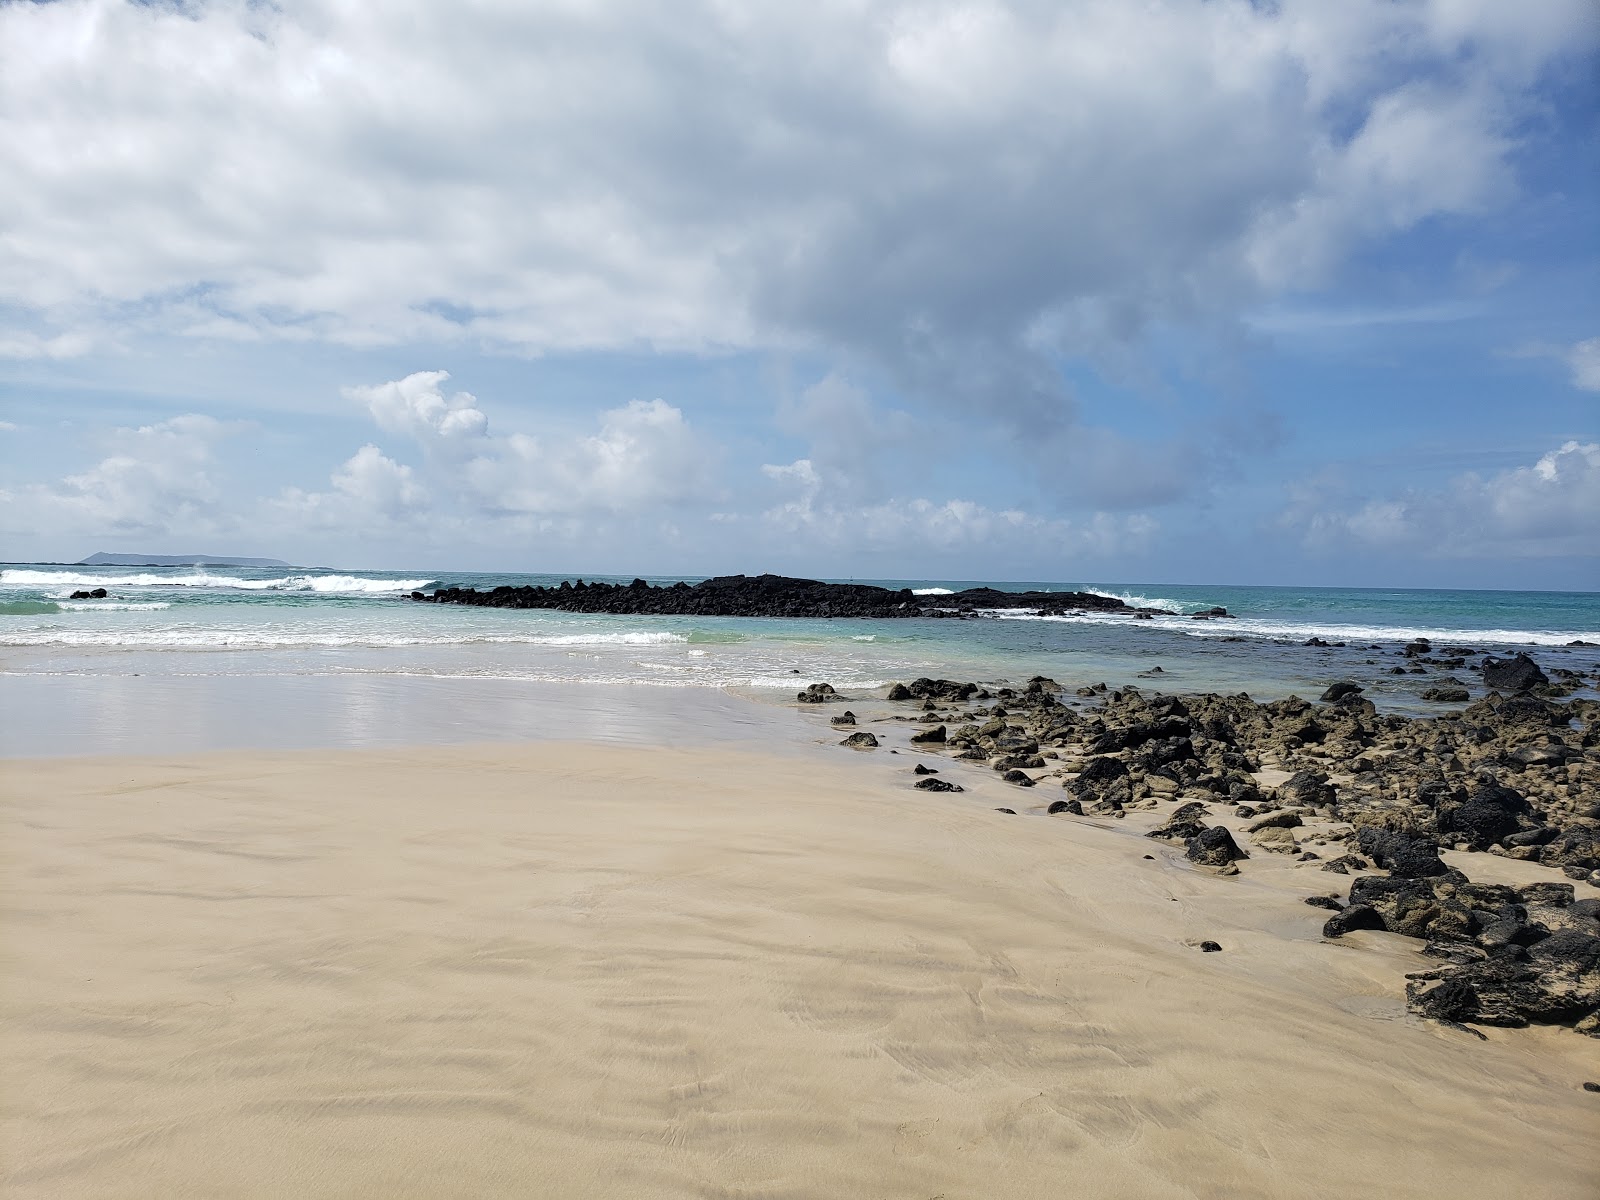 Fotografie cu La Playita cu o suprafață de nisip strălucitor